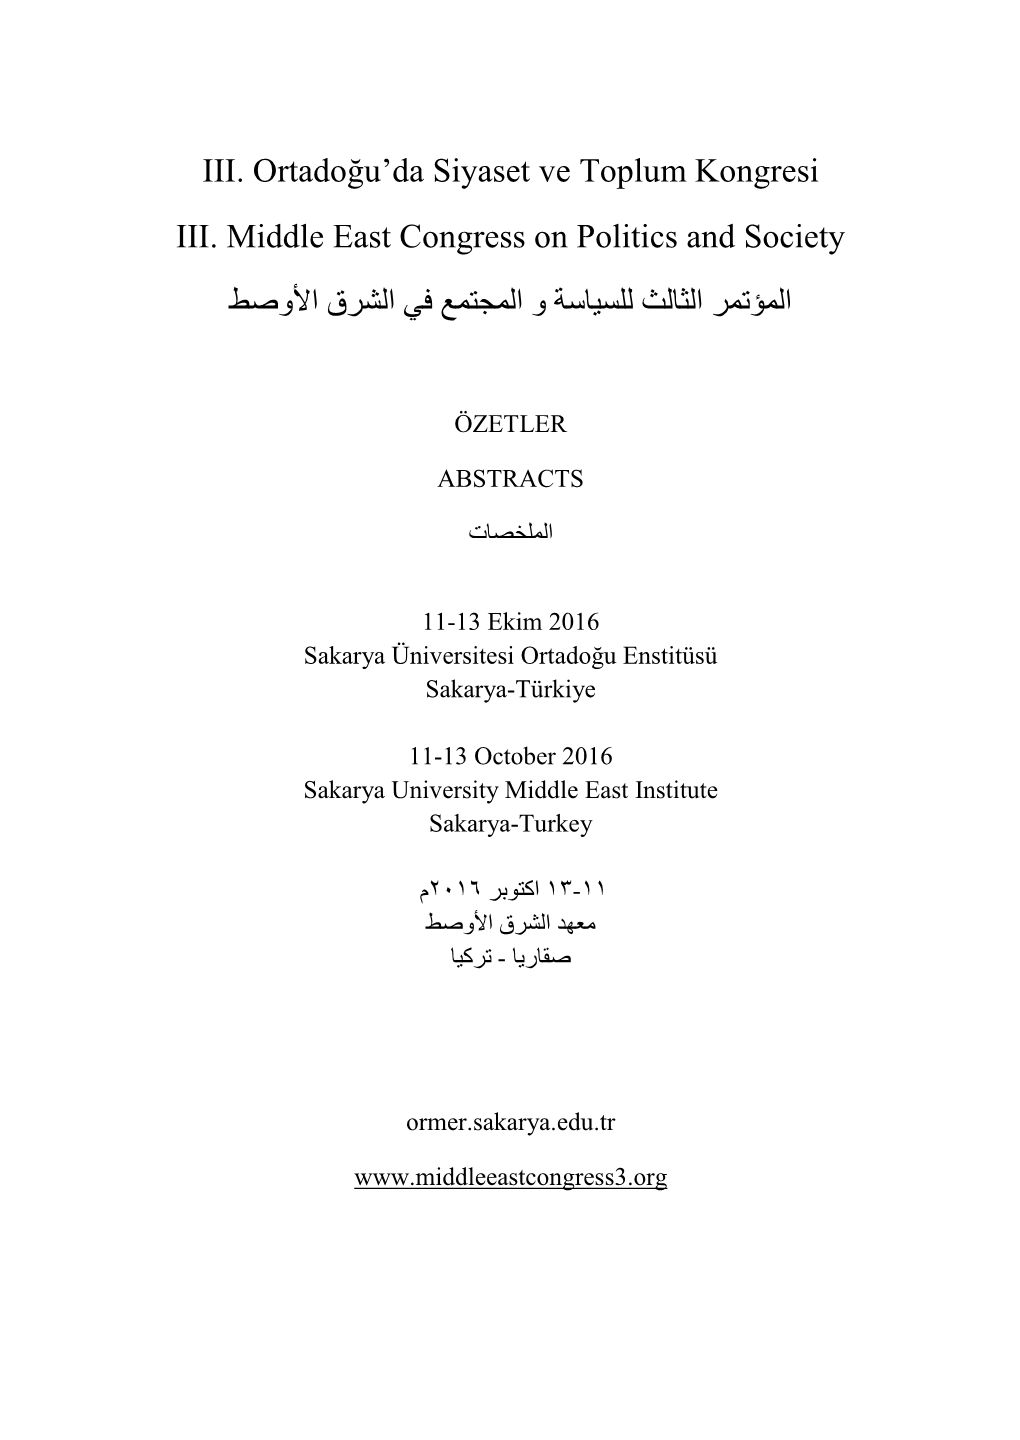 III. Ortadoğu'da Siyaset Ve Toplum Kongresi III. Middle East Congress